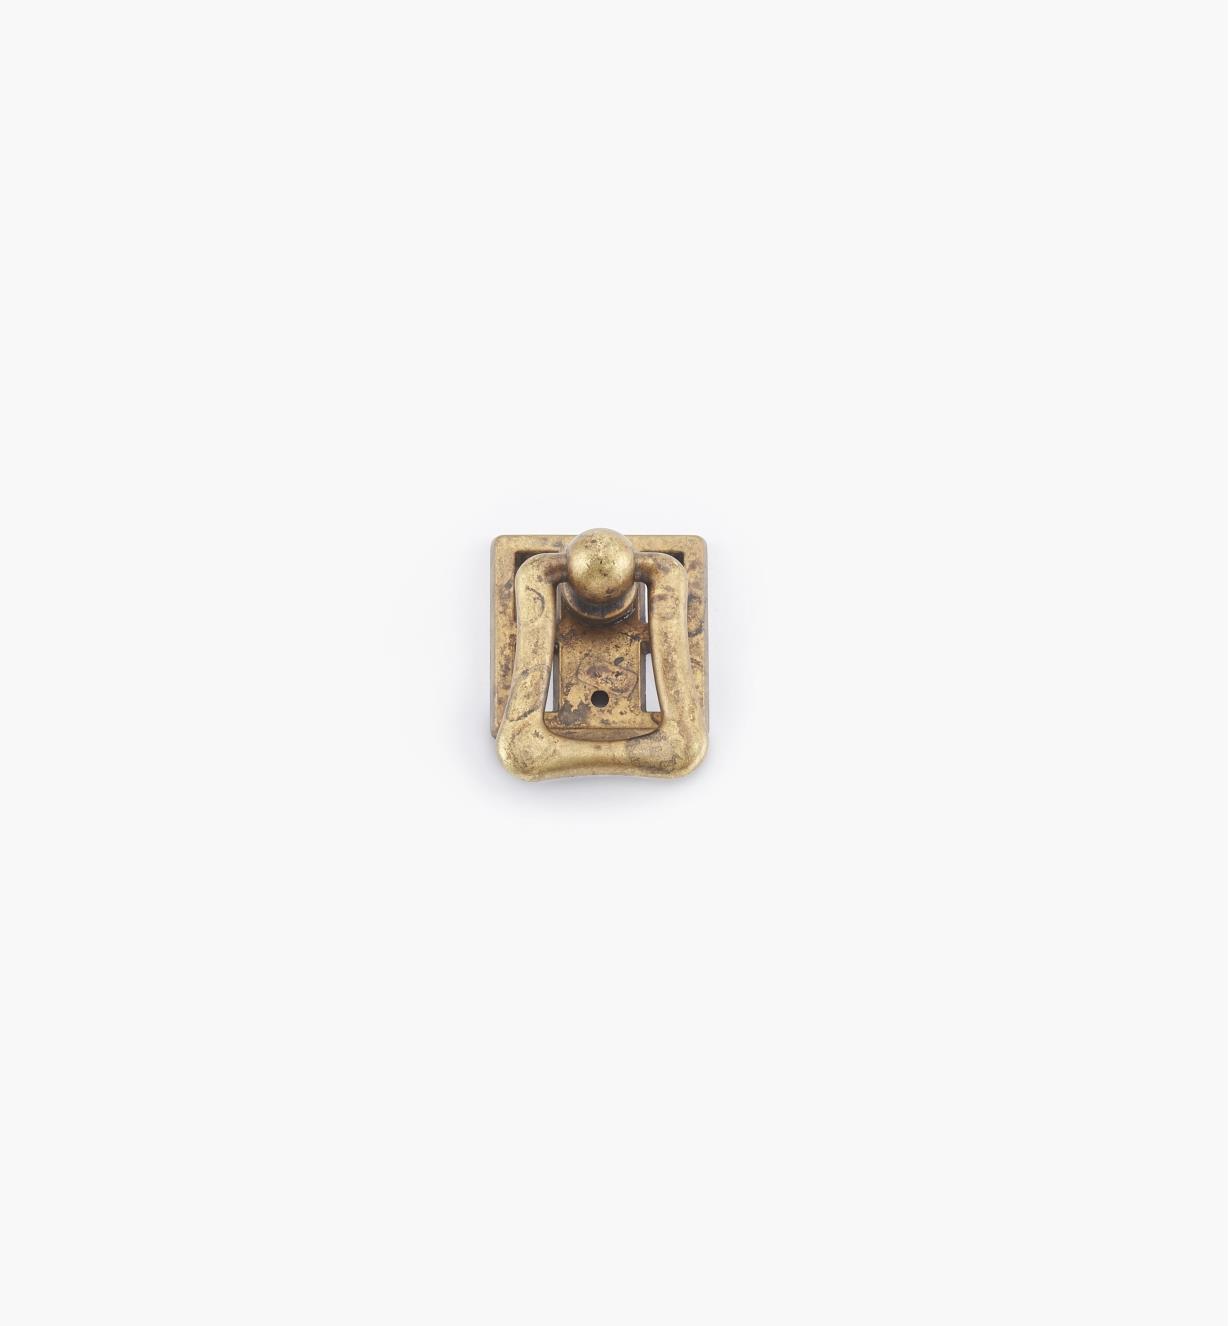 01A2273 - Poignée à anneau sur platine carrée, 2 po × 1 1/8 po, série Arts and Crafts I, fini laiton ancien